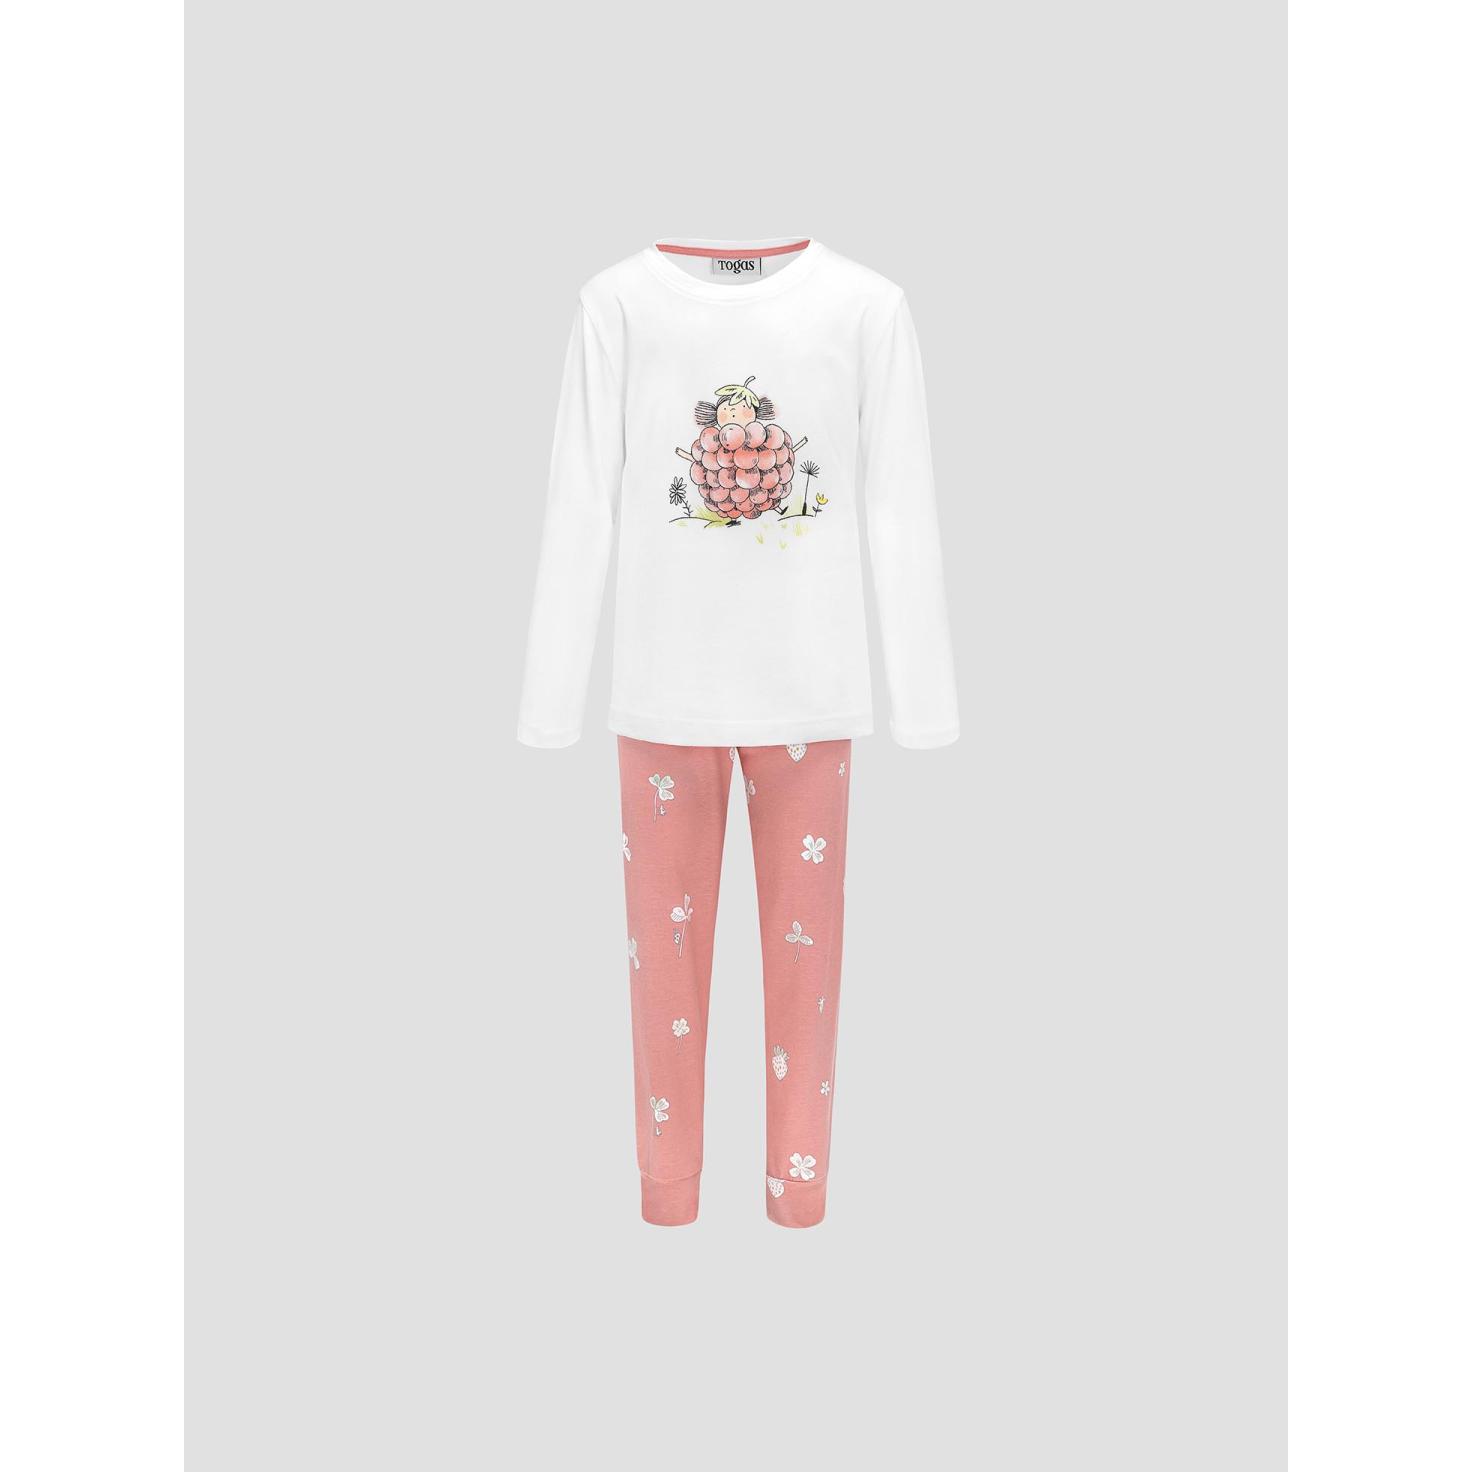 Пижама для девочек Kids by togas Стробби бело-розовый 104-110 см жен пижама с шортами инь янь белый р 54